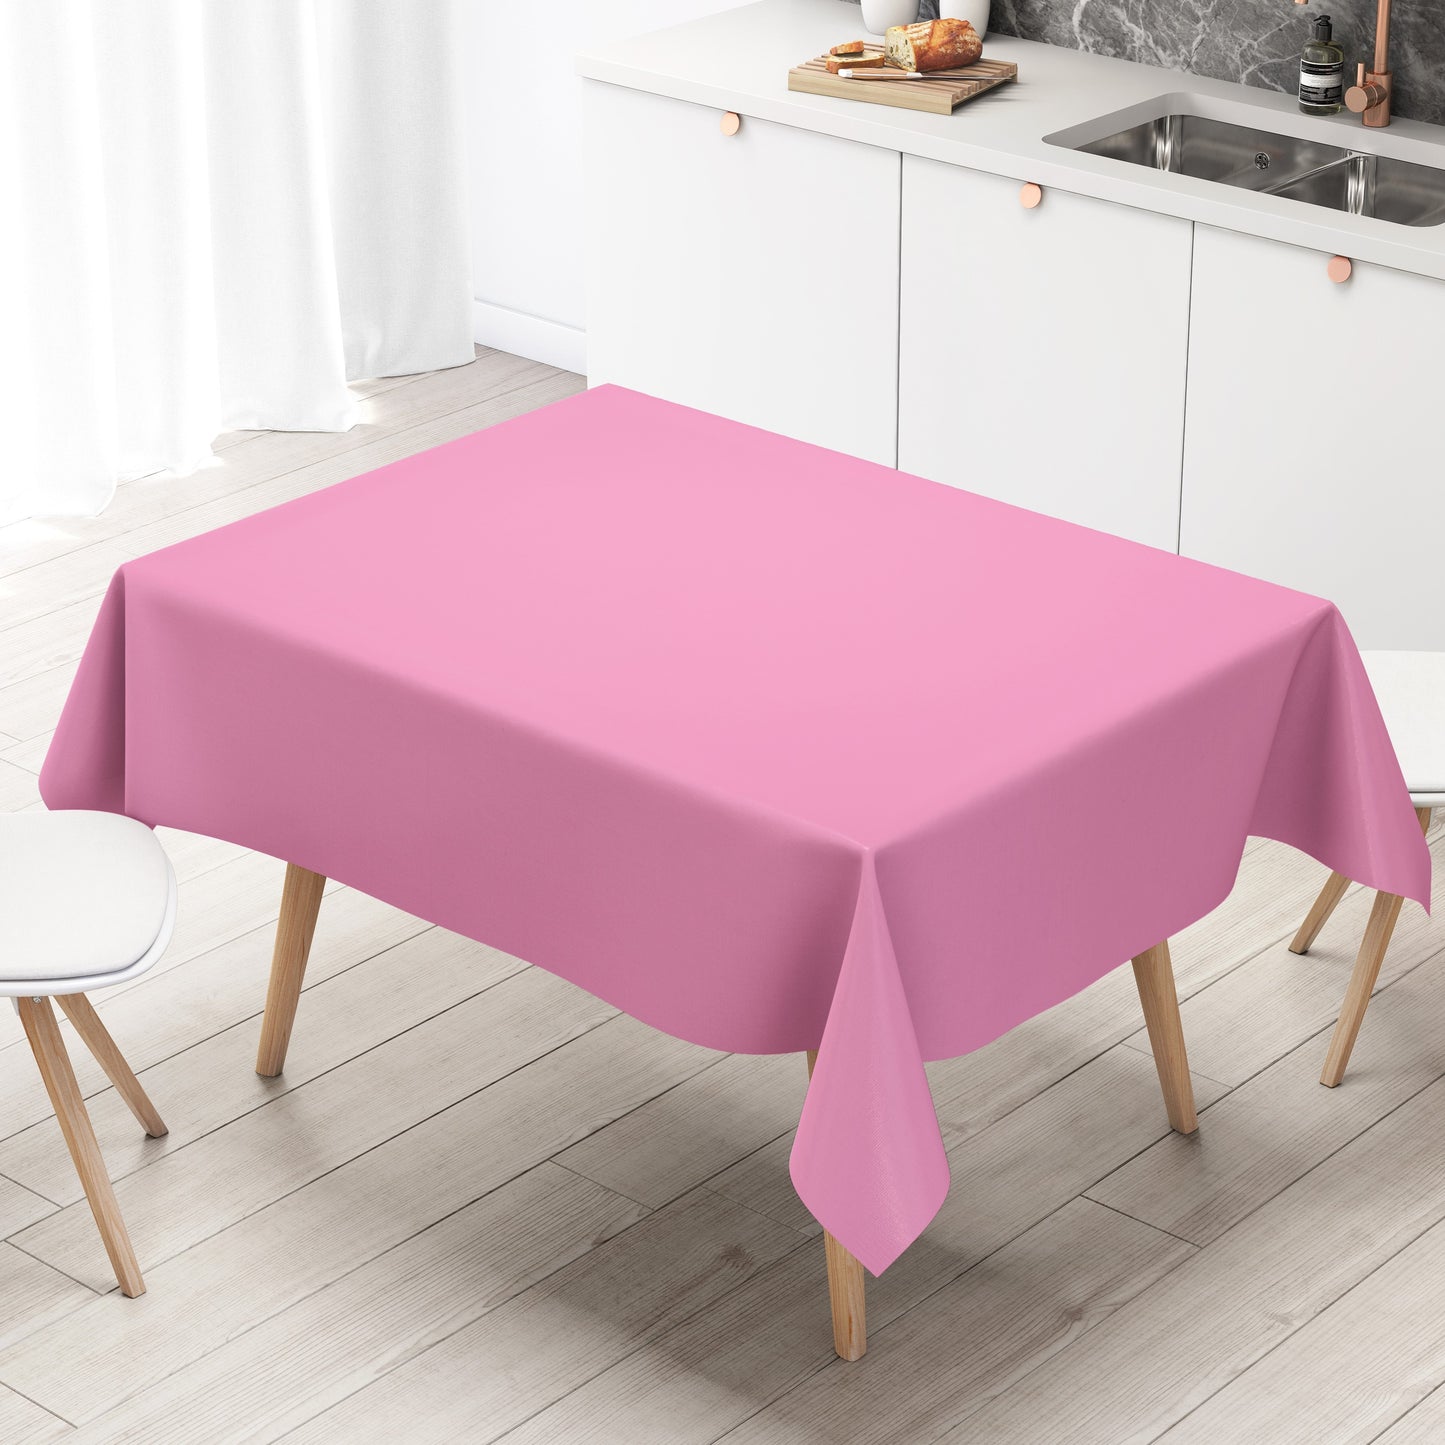 KEVKUS Wachstuch Tischdecke unifarben 210 rosa einfarbig wählbar in eckig, rund und oval -